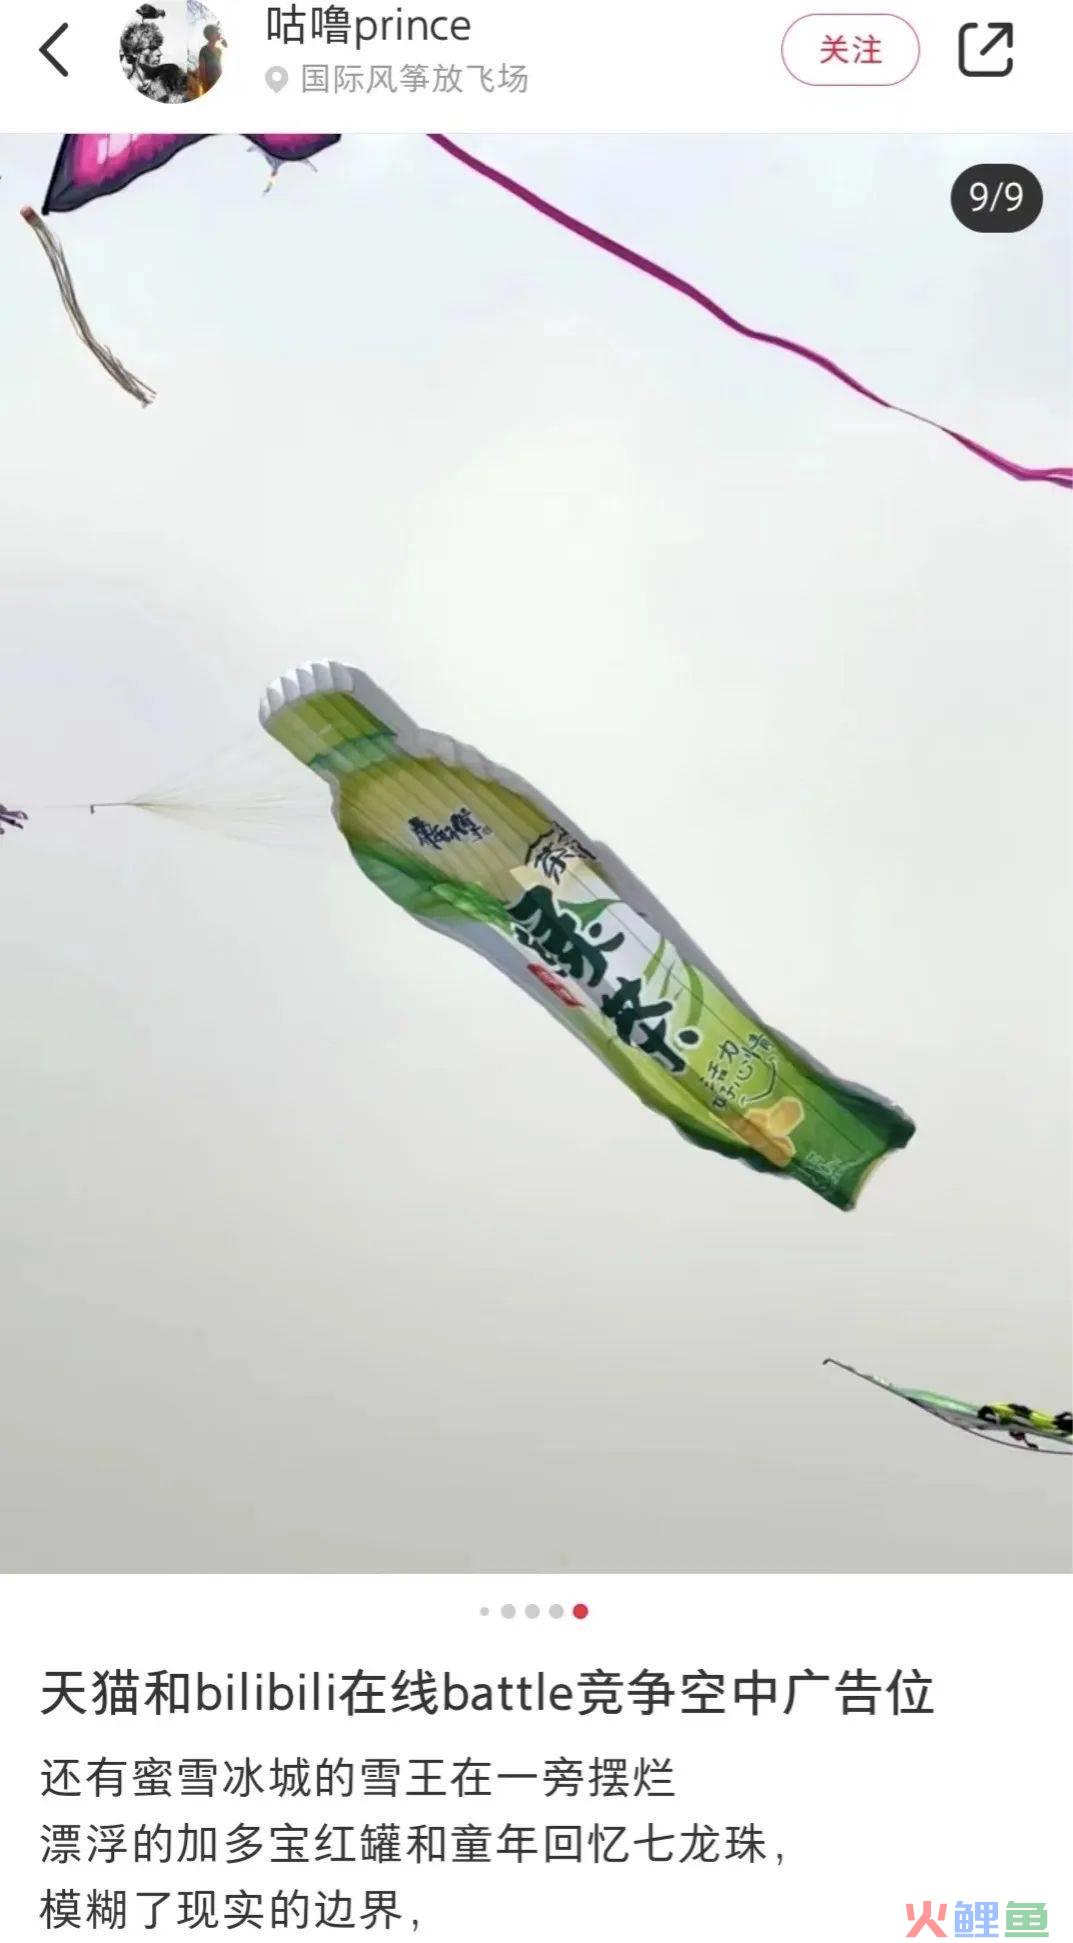 除了秦始皇变形计，雪王和天猫也被潍坊放了风筝